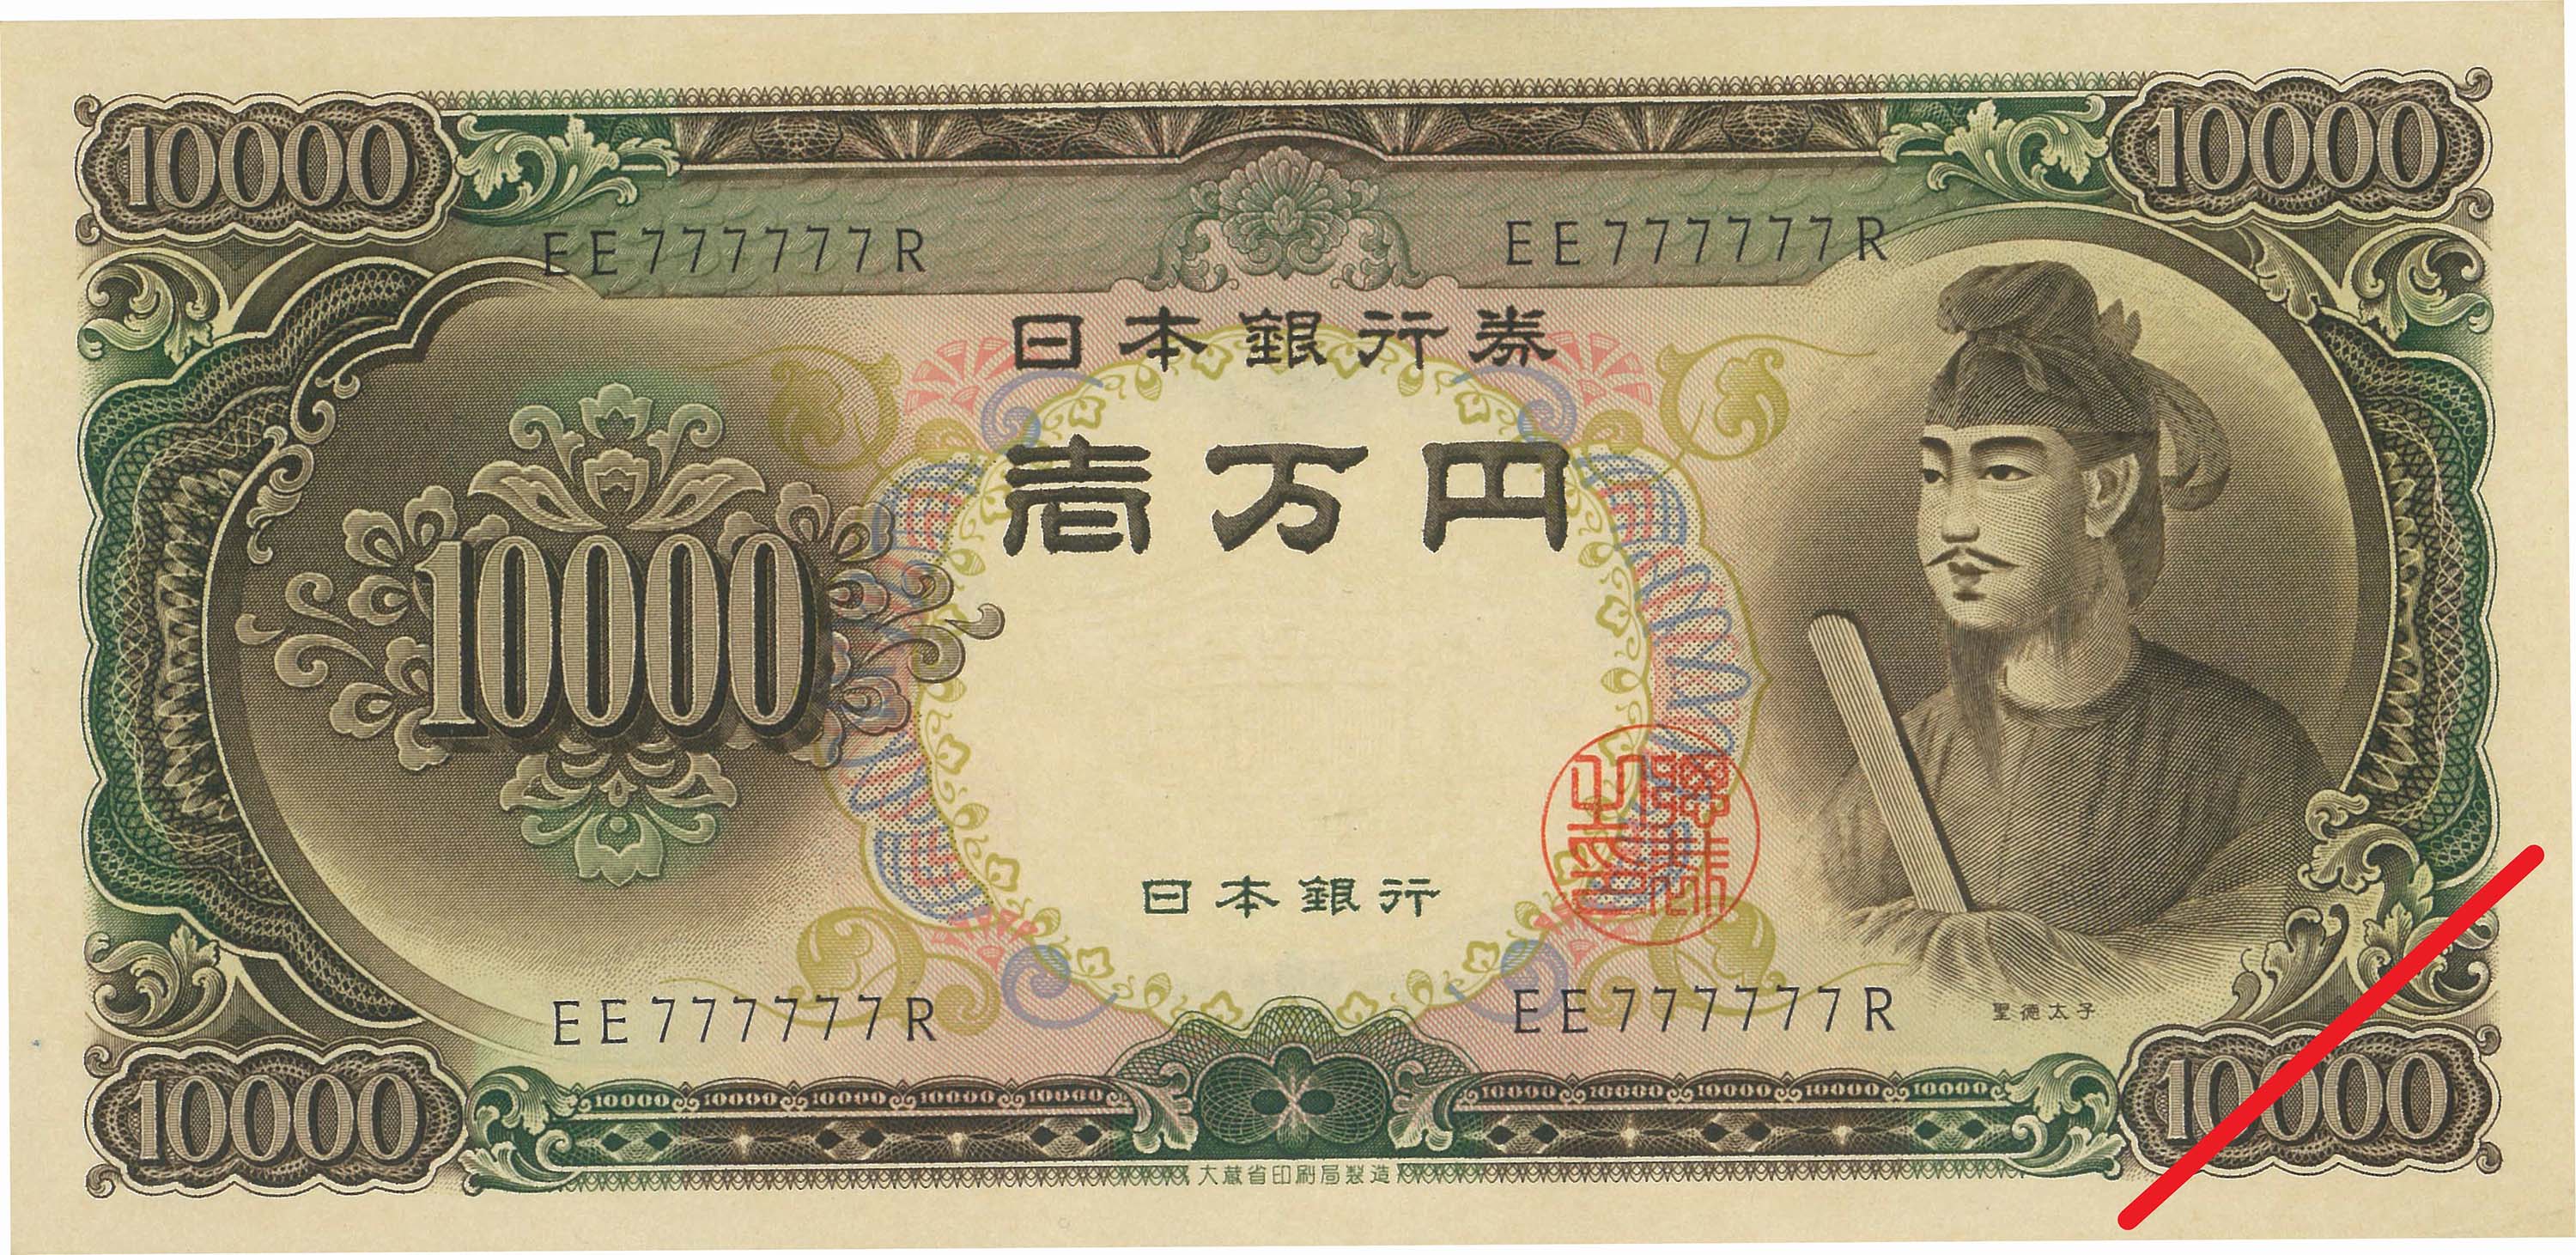 日本-Japan. 未使用. UNC. Banknote. 聖徳太子10000円札 2桁 珍番 昭和 